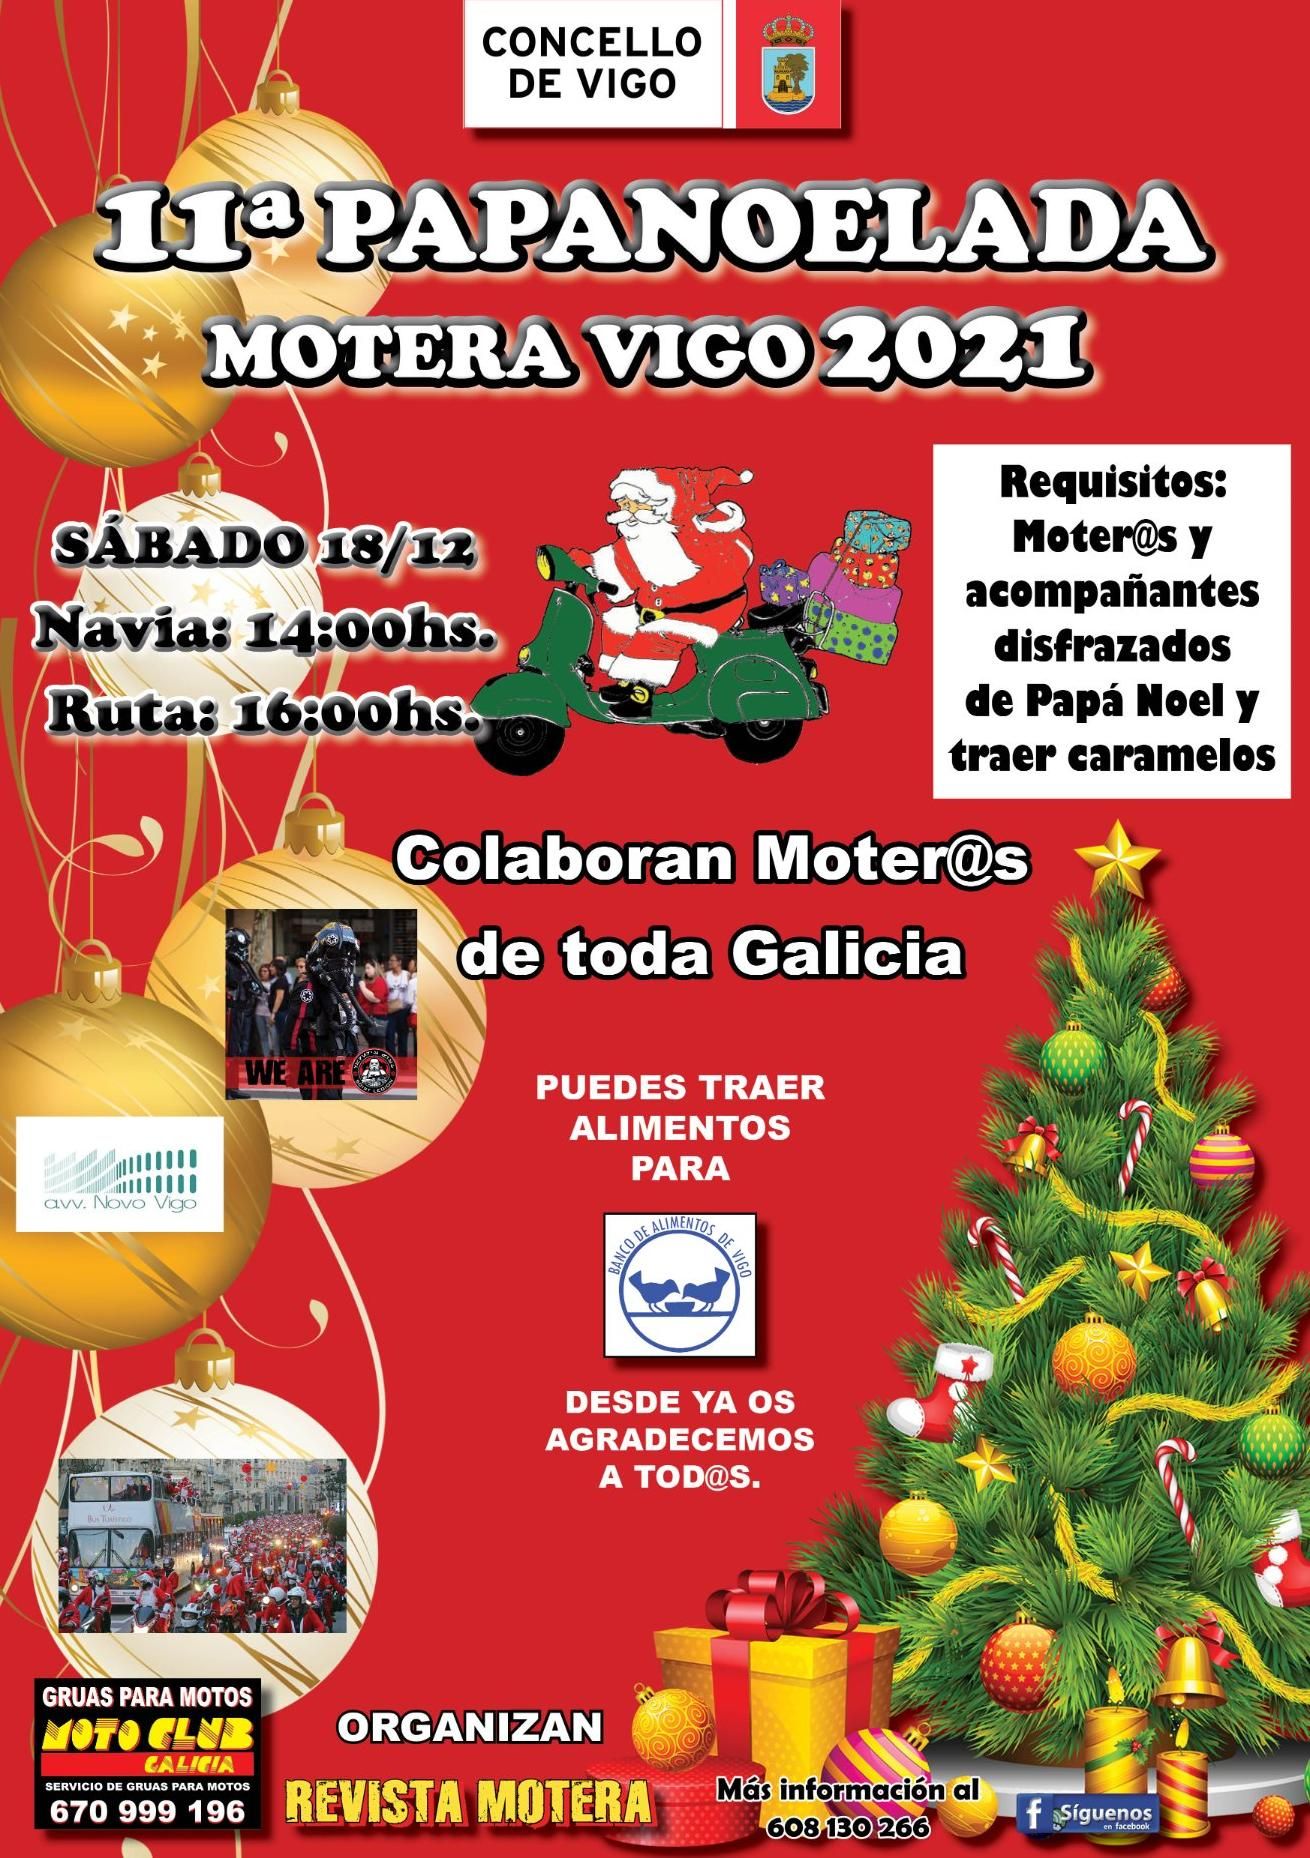 Cartel de la 11º edición de la Papanoelada motera de Vigo 2021.